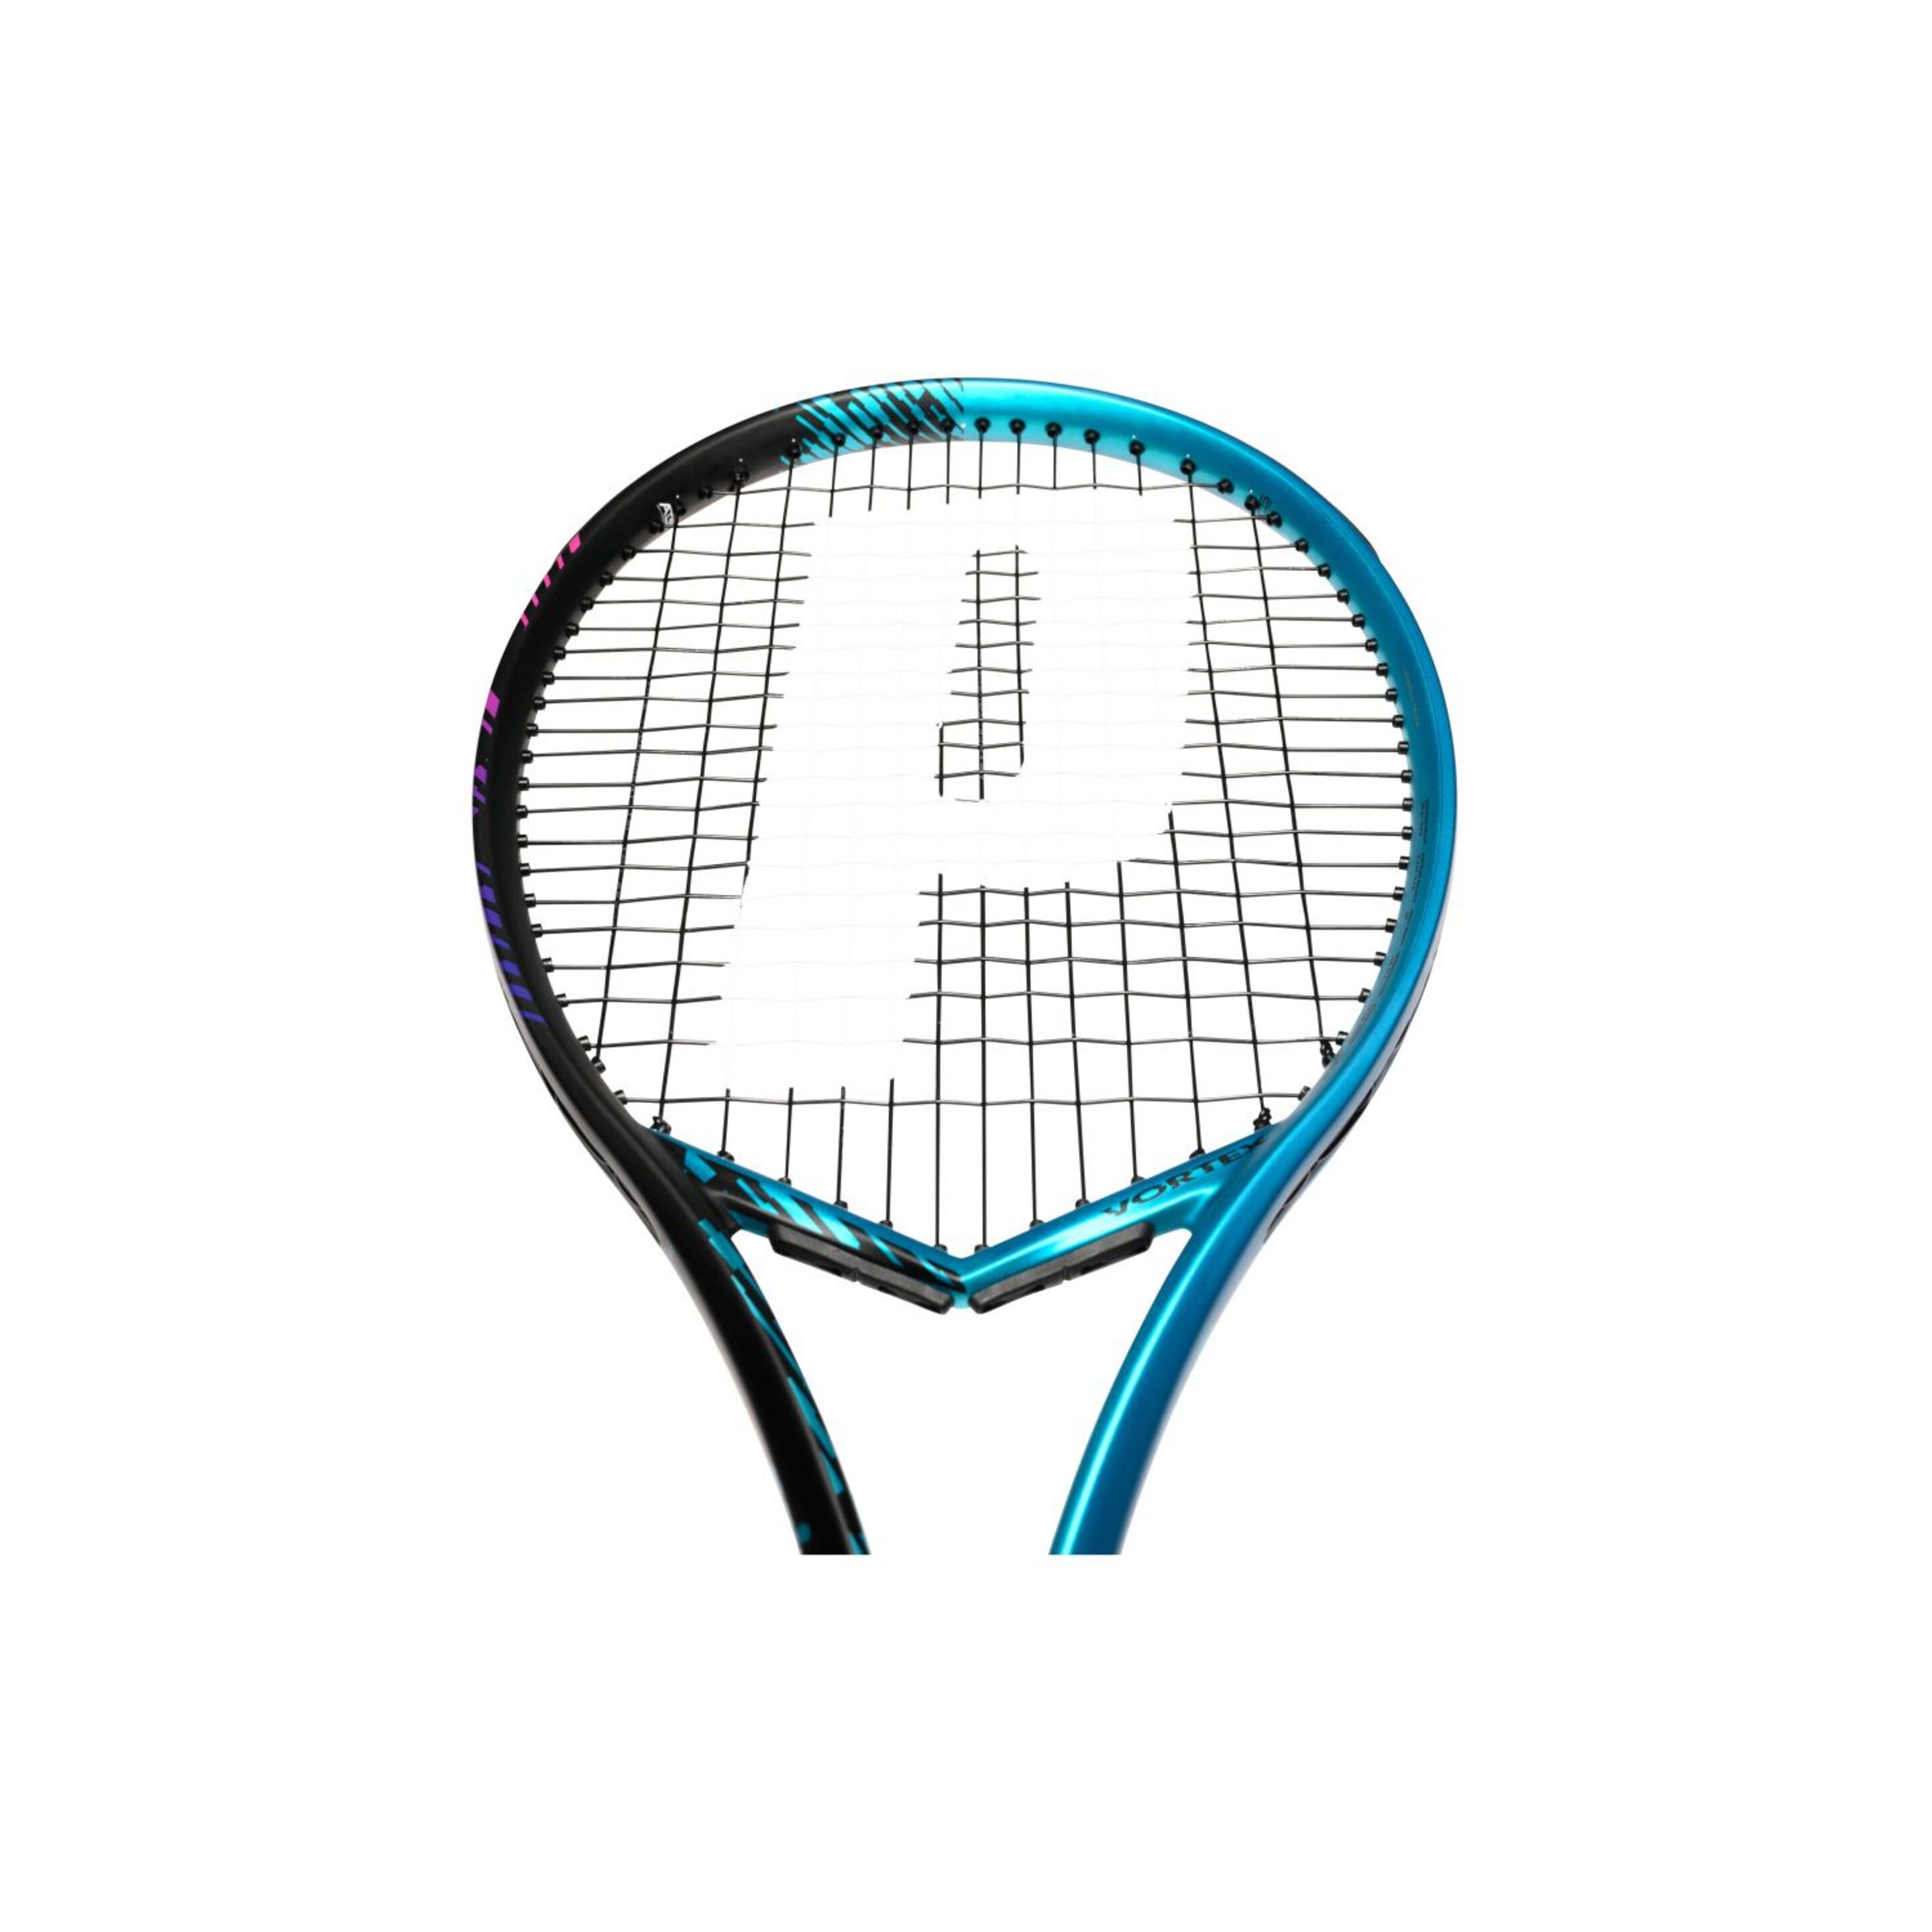 Raqueta De Tenis Prince Vortex 100 300 G (sin Encordar Y Sin Funda) - Negro/Azul  MKP